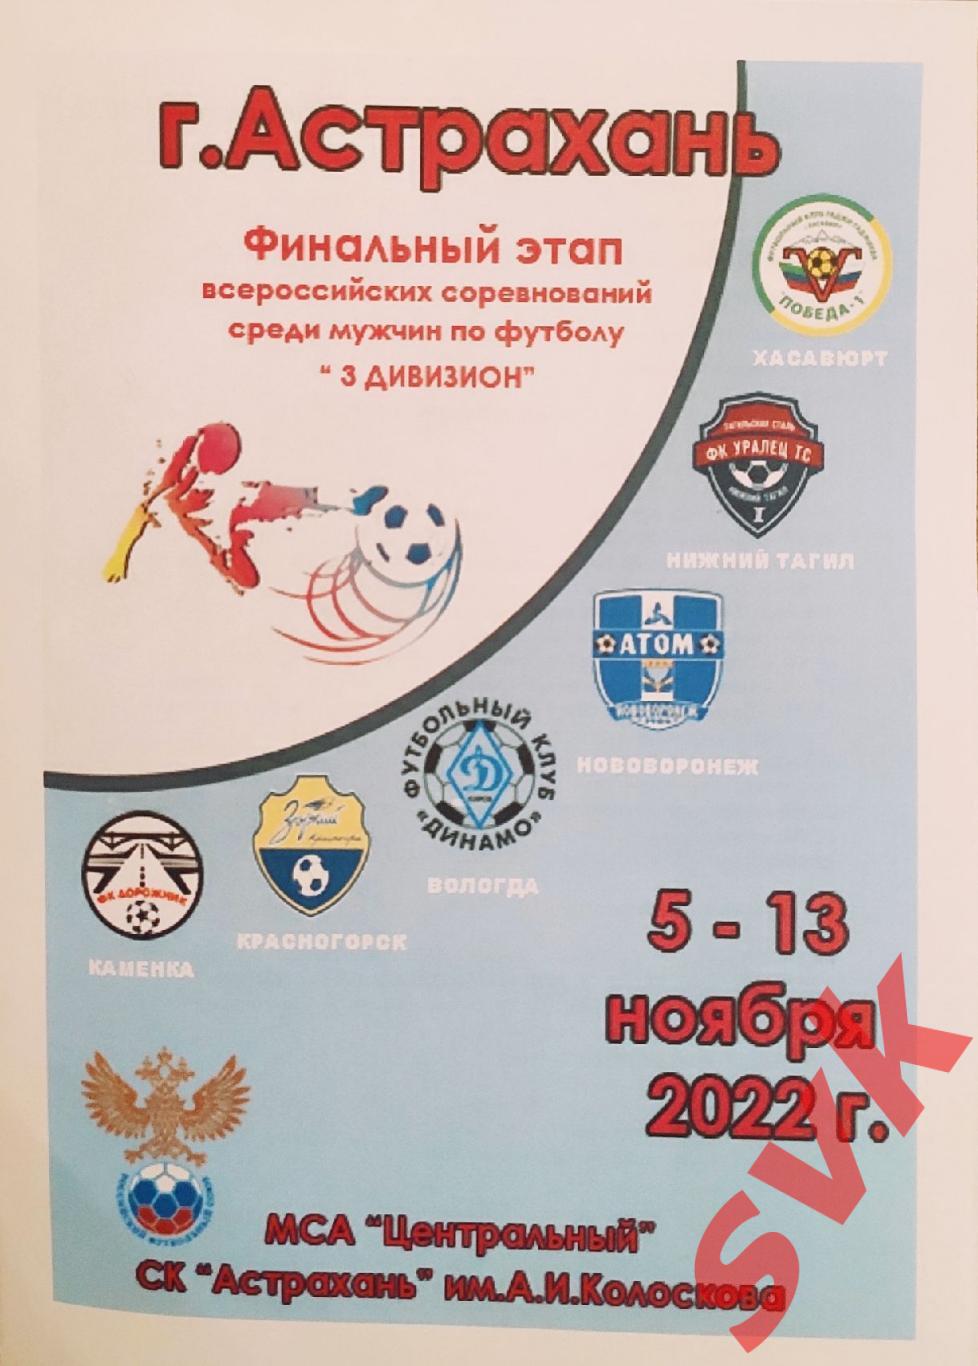 Финальный этап всероссийских соревнований среди мужчин по футболу 3 див 2022 г.